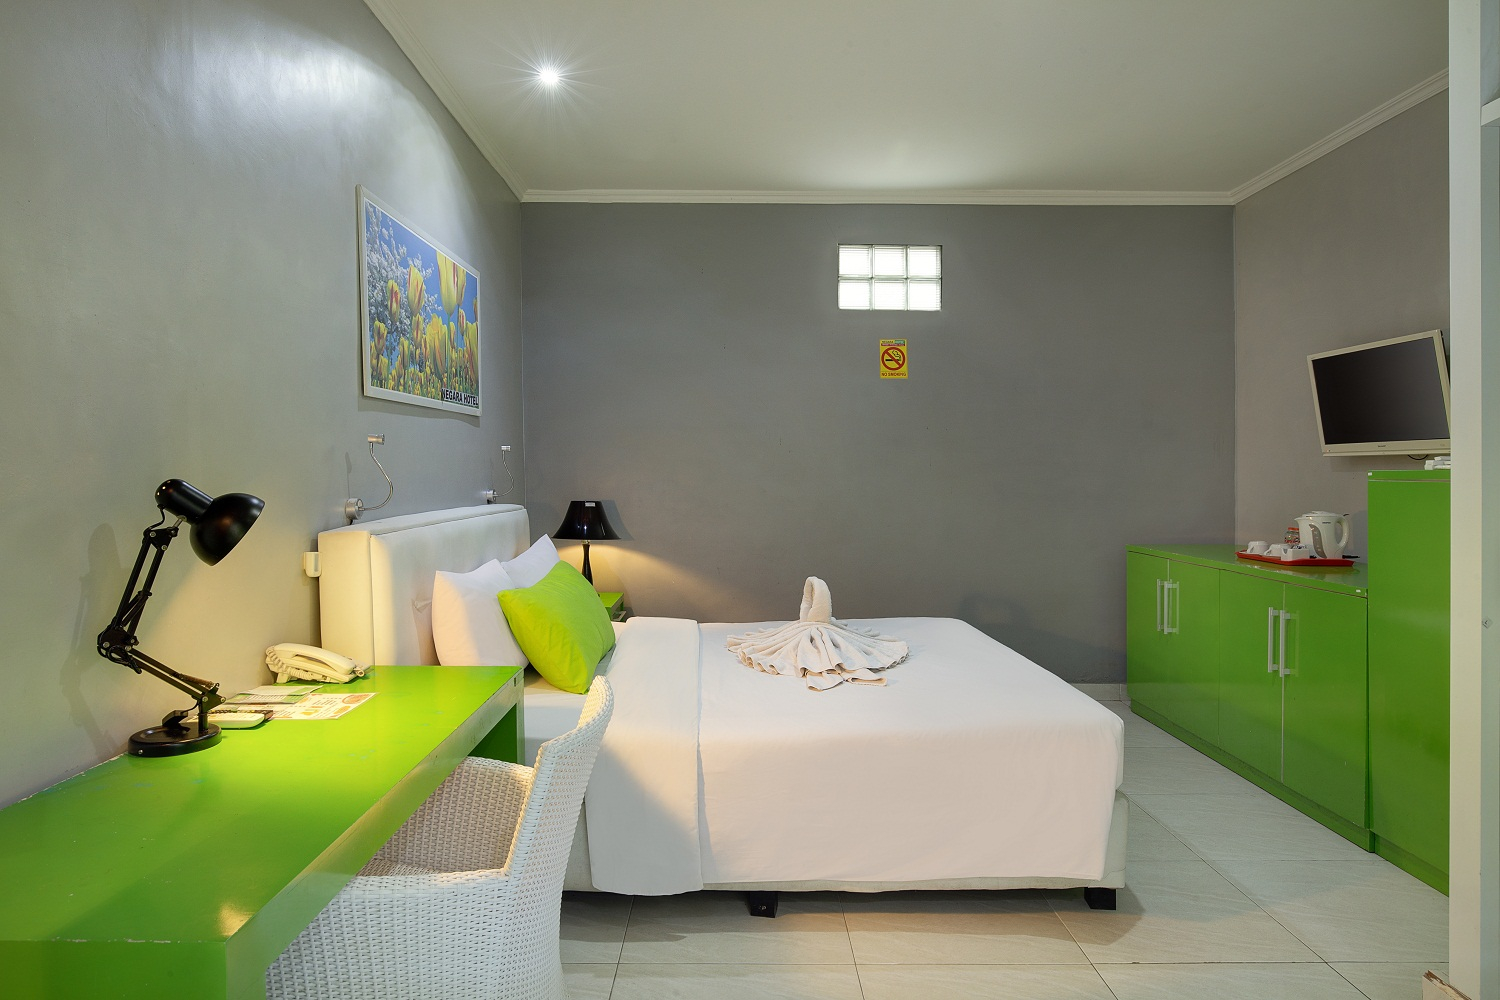 Bedroom 1, Negara Hotel Bali, Jembrana